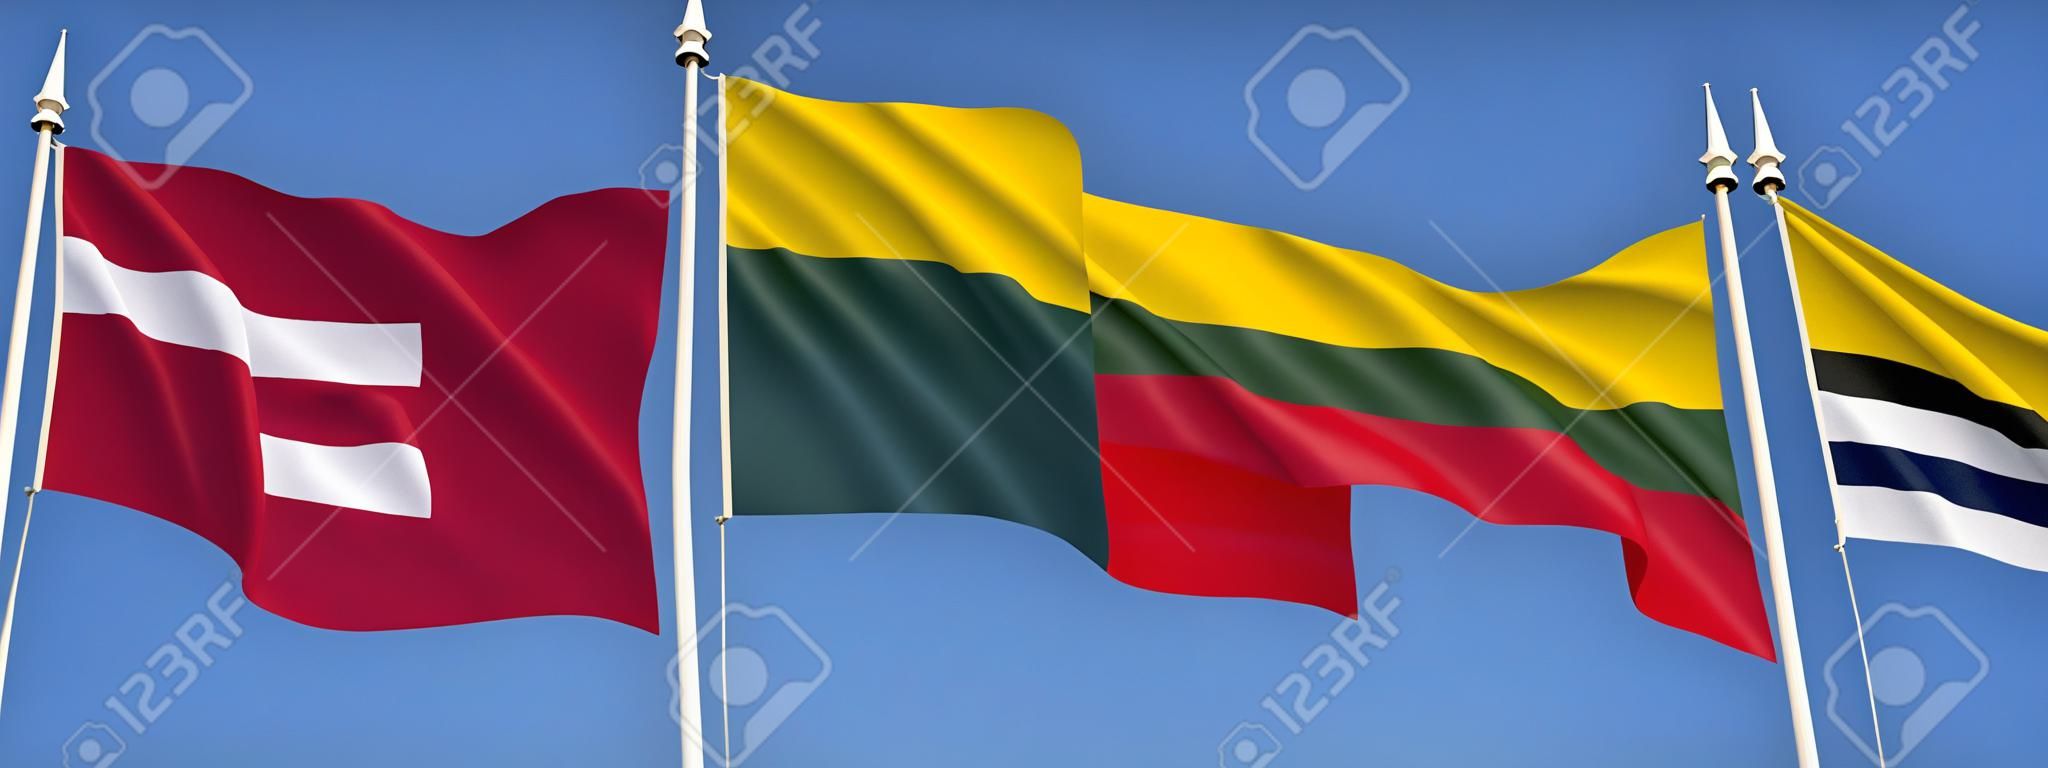 Vlaggen van de Baltische staten - Letland, Litouwen en Estland.